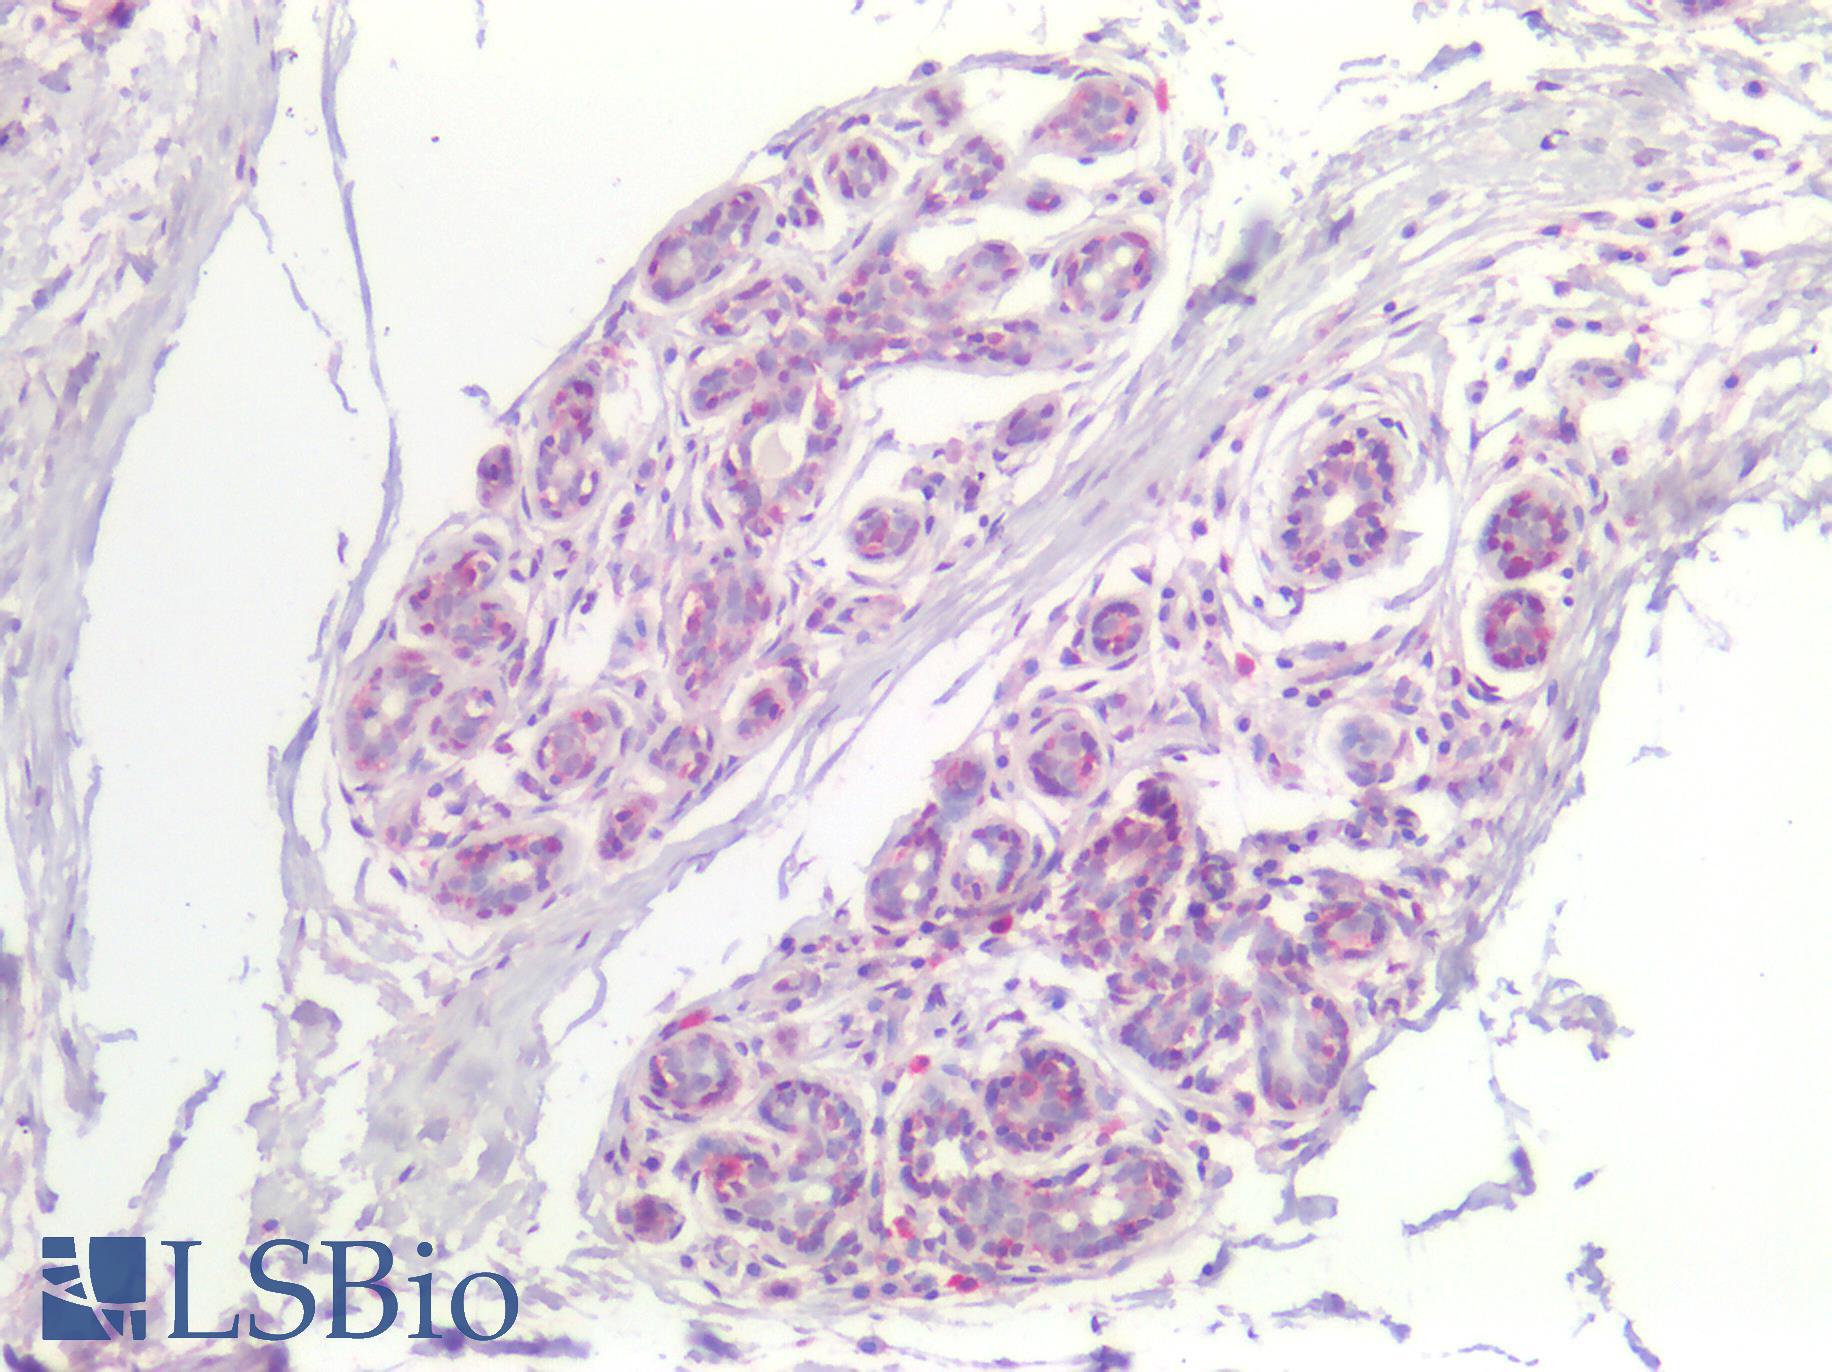 FABP7 / BLBP / MRG Antibody - Human Breast: Formalin-Fixed, Paraffin-Embedded (FFPE)